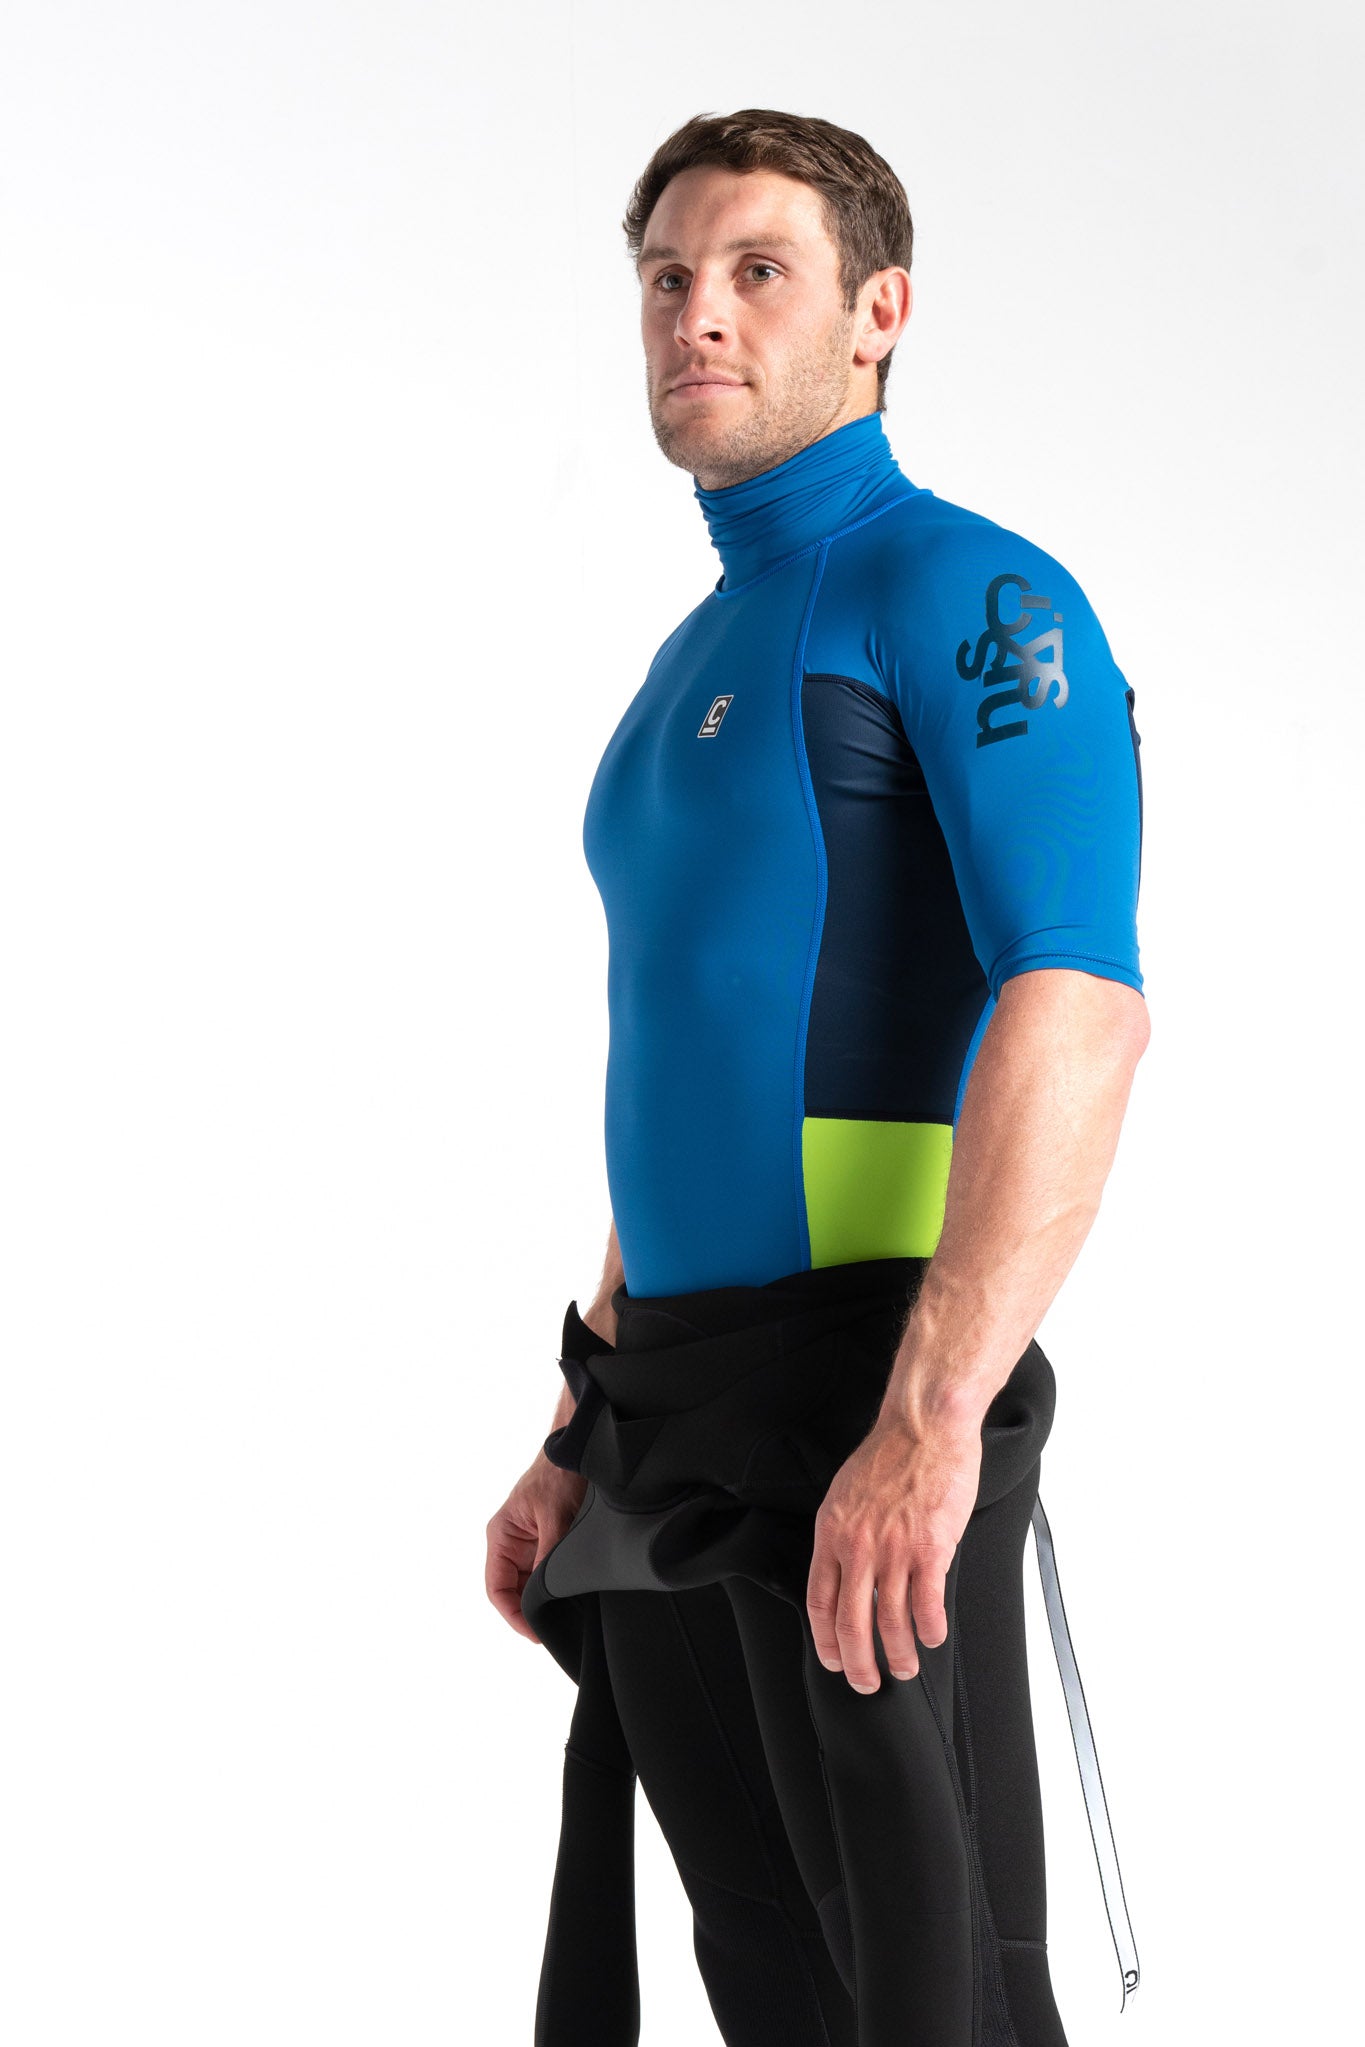 C-Skins UV50 Skins Turtle Neck Rash Vest in Slate Blue/Navy/Lime - Side & Arm Logo